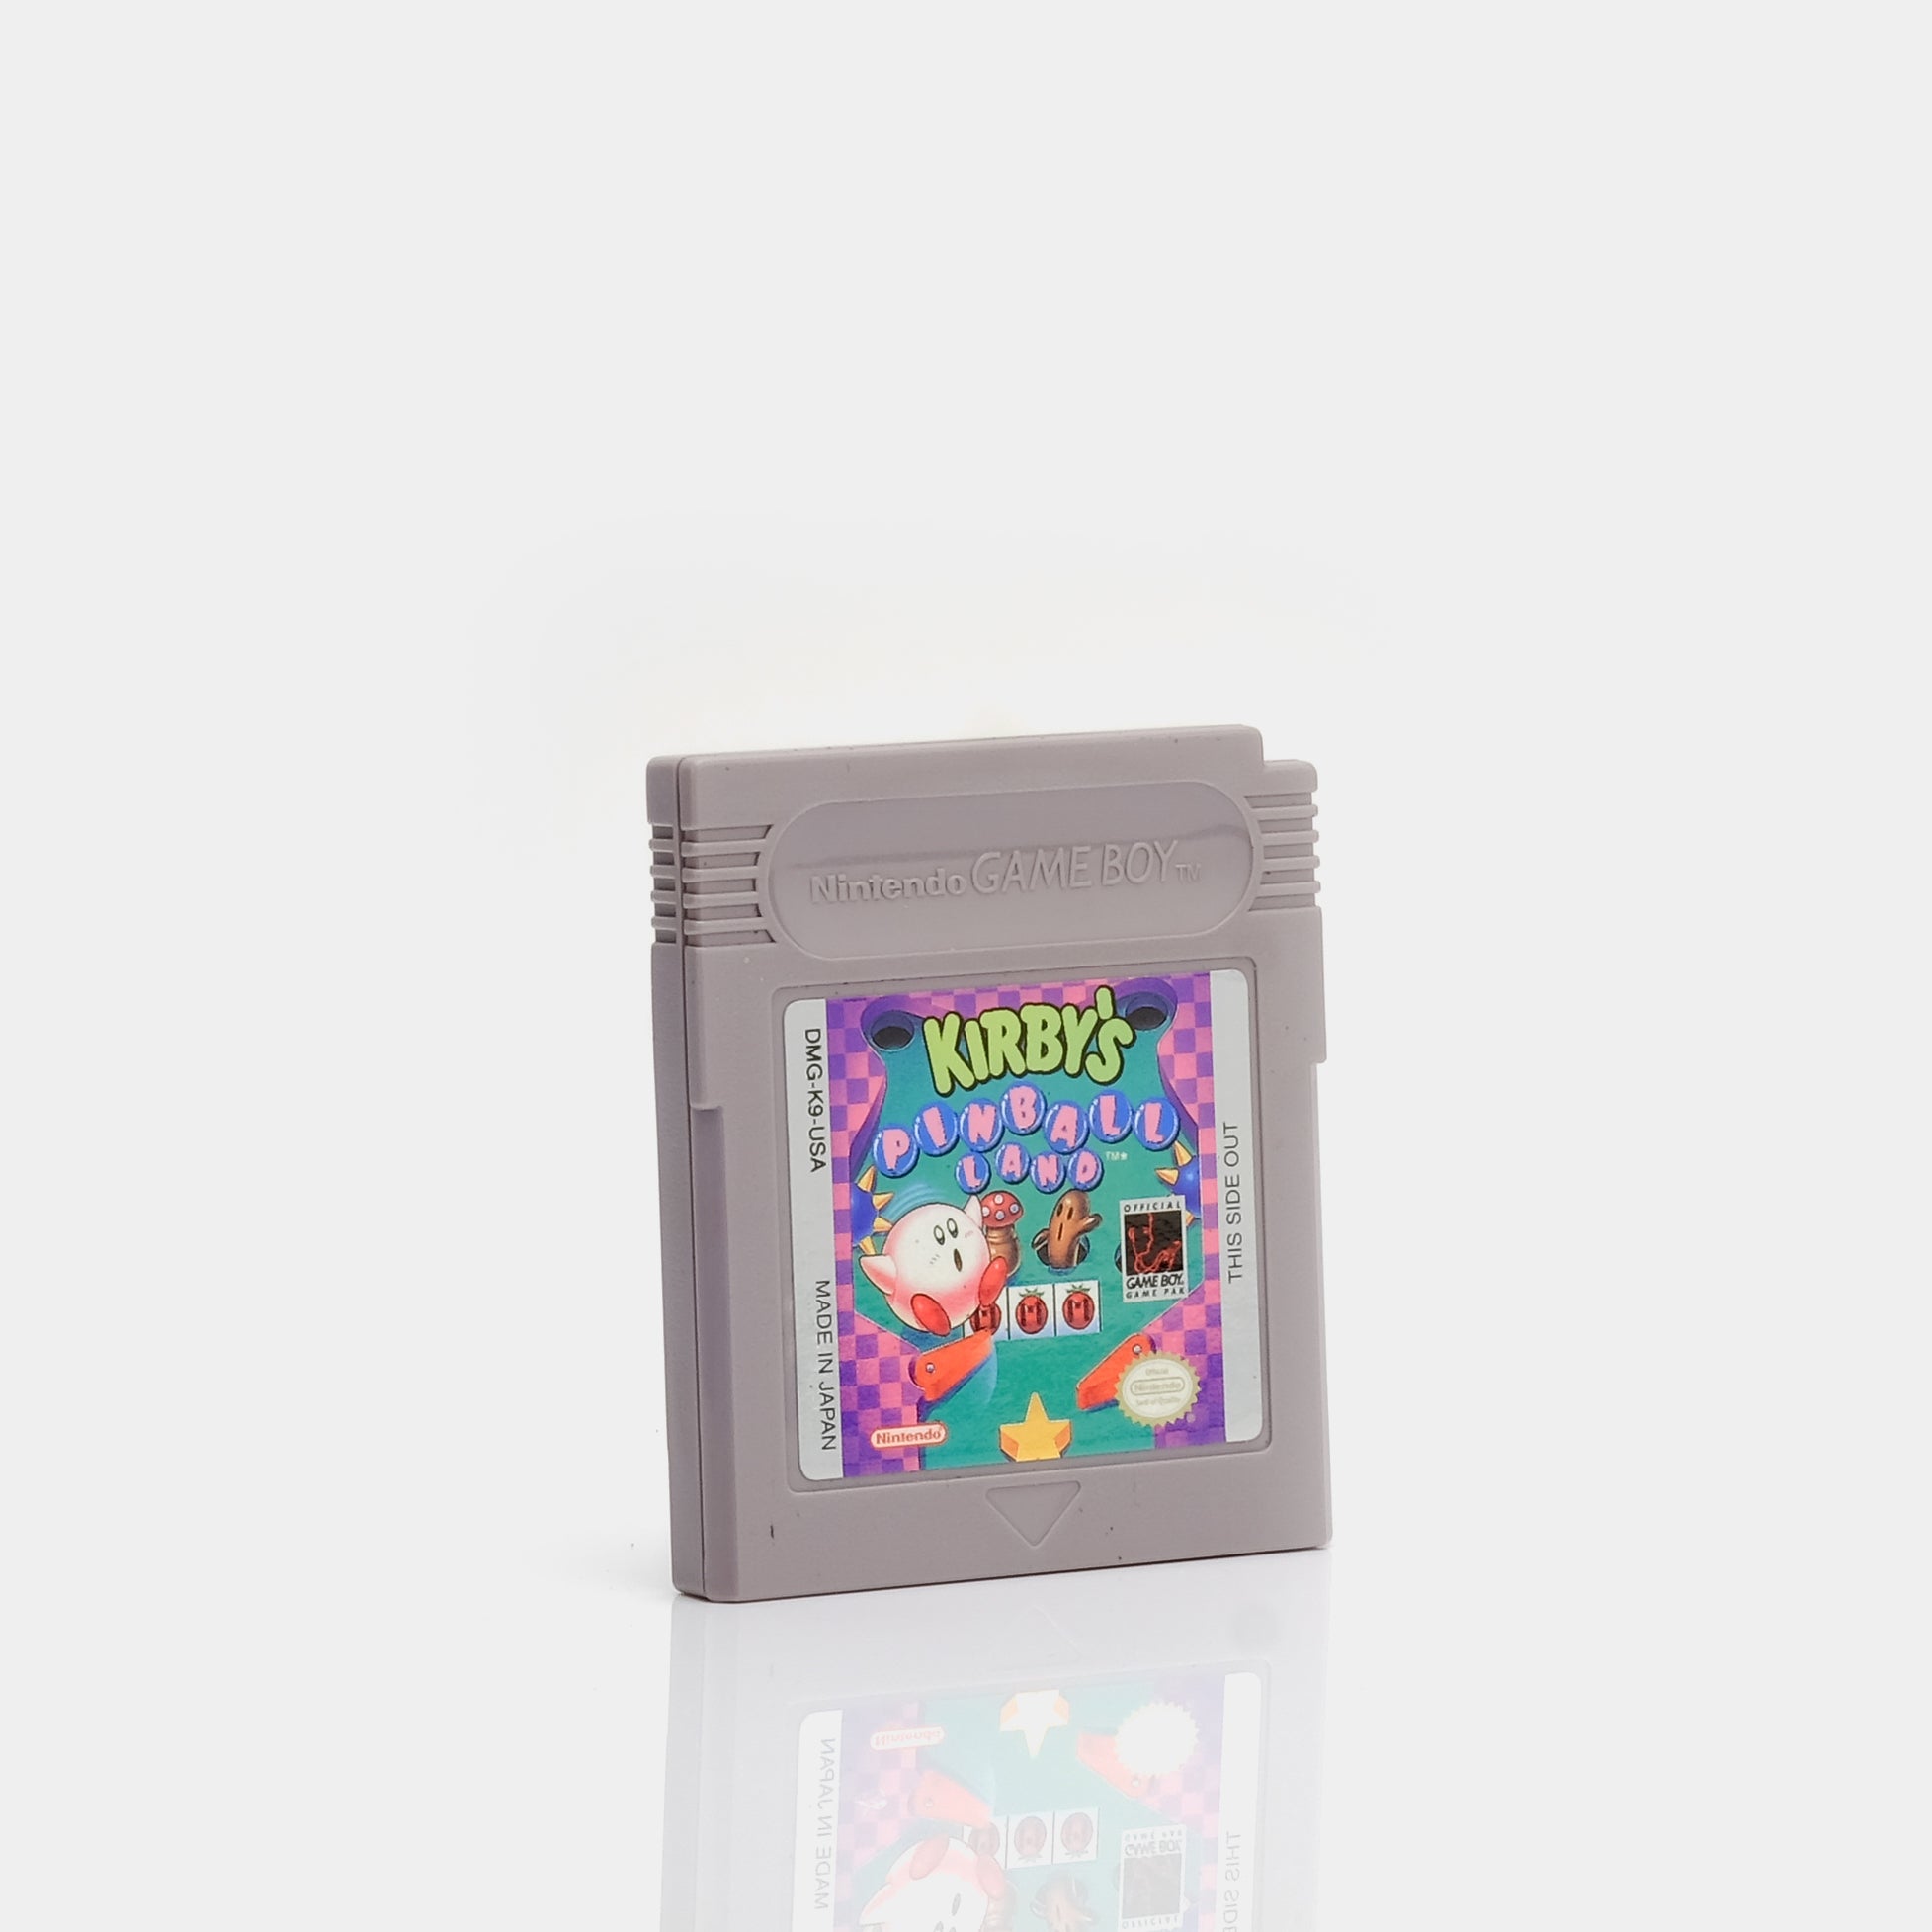 Kirby's Pinball Land Game Boy Game